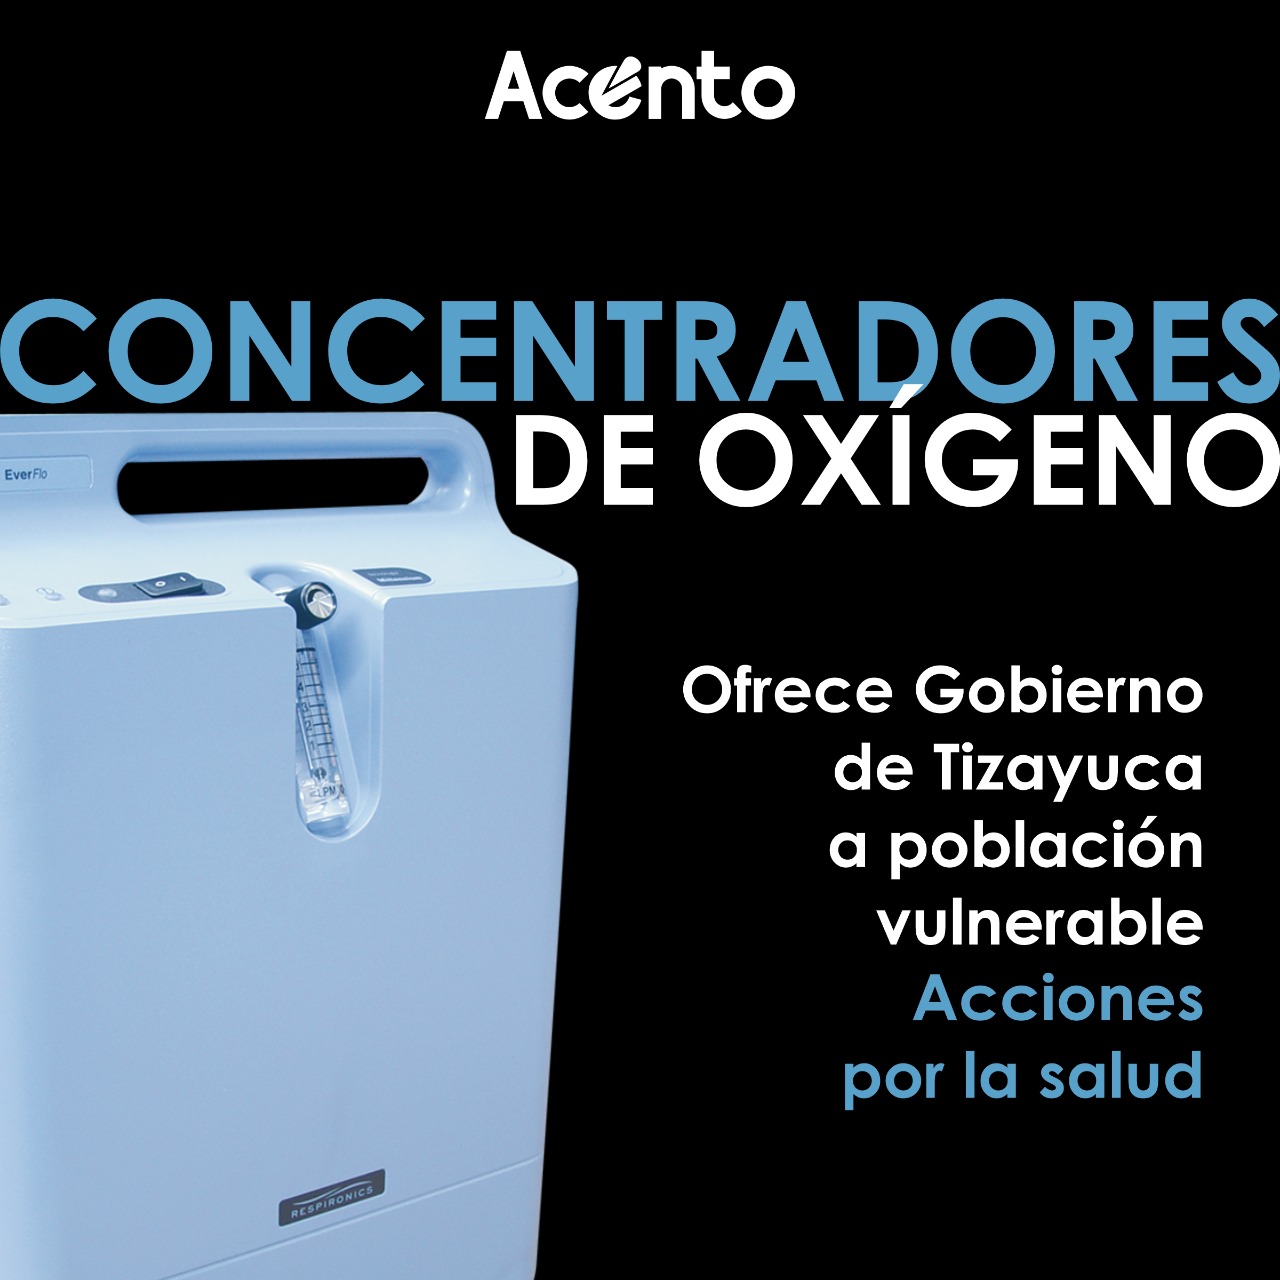 Gobierno de Tizayuca ofrece concentradores de oxígeno a afectados por Covid-19